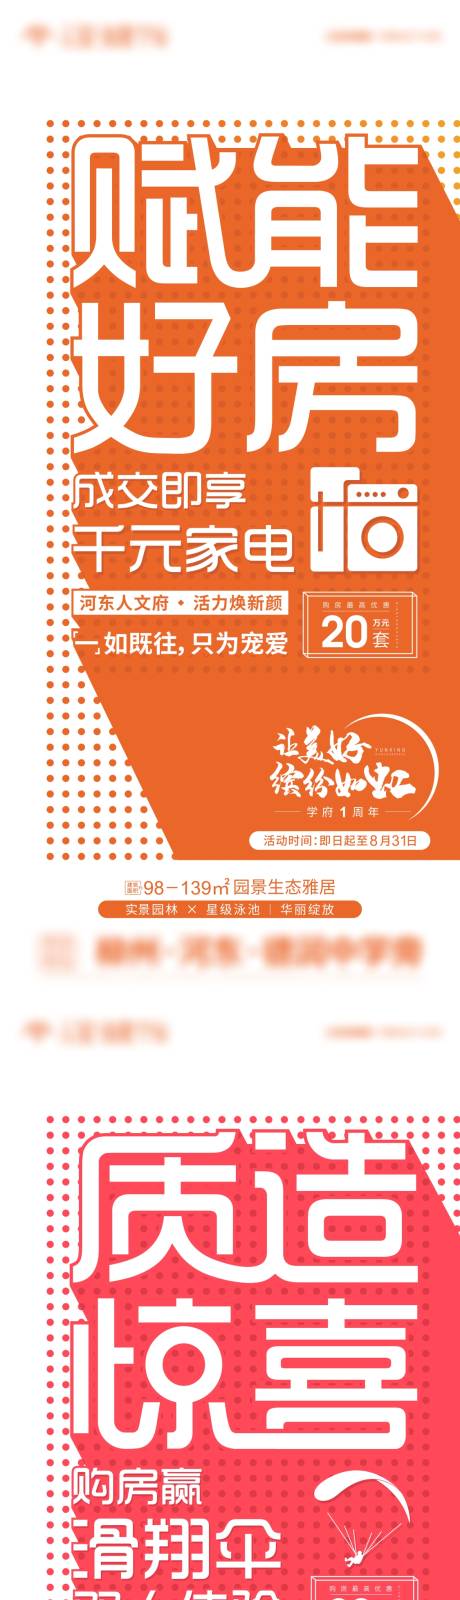 地产周年庆礼惠系列海报